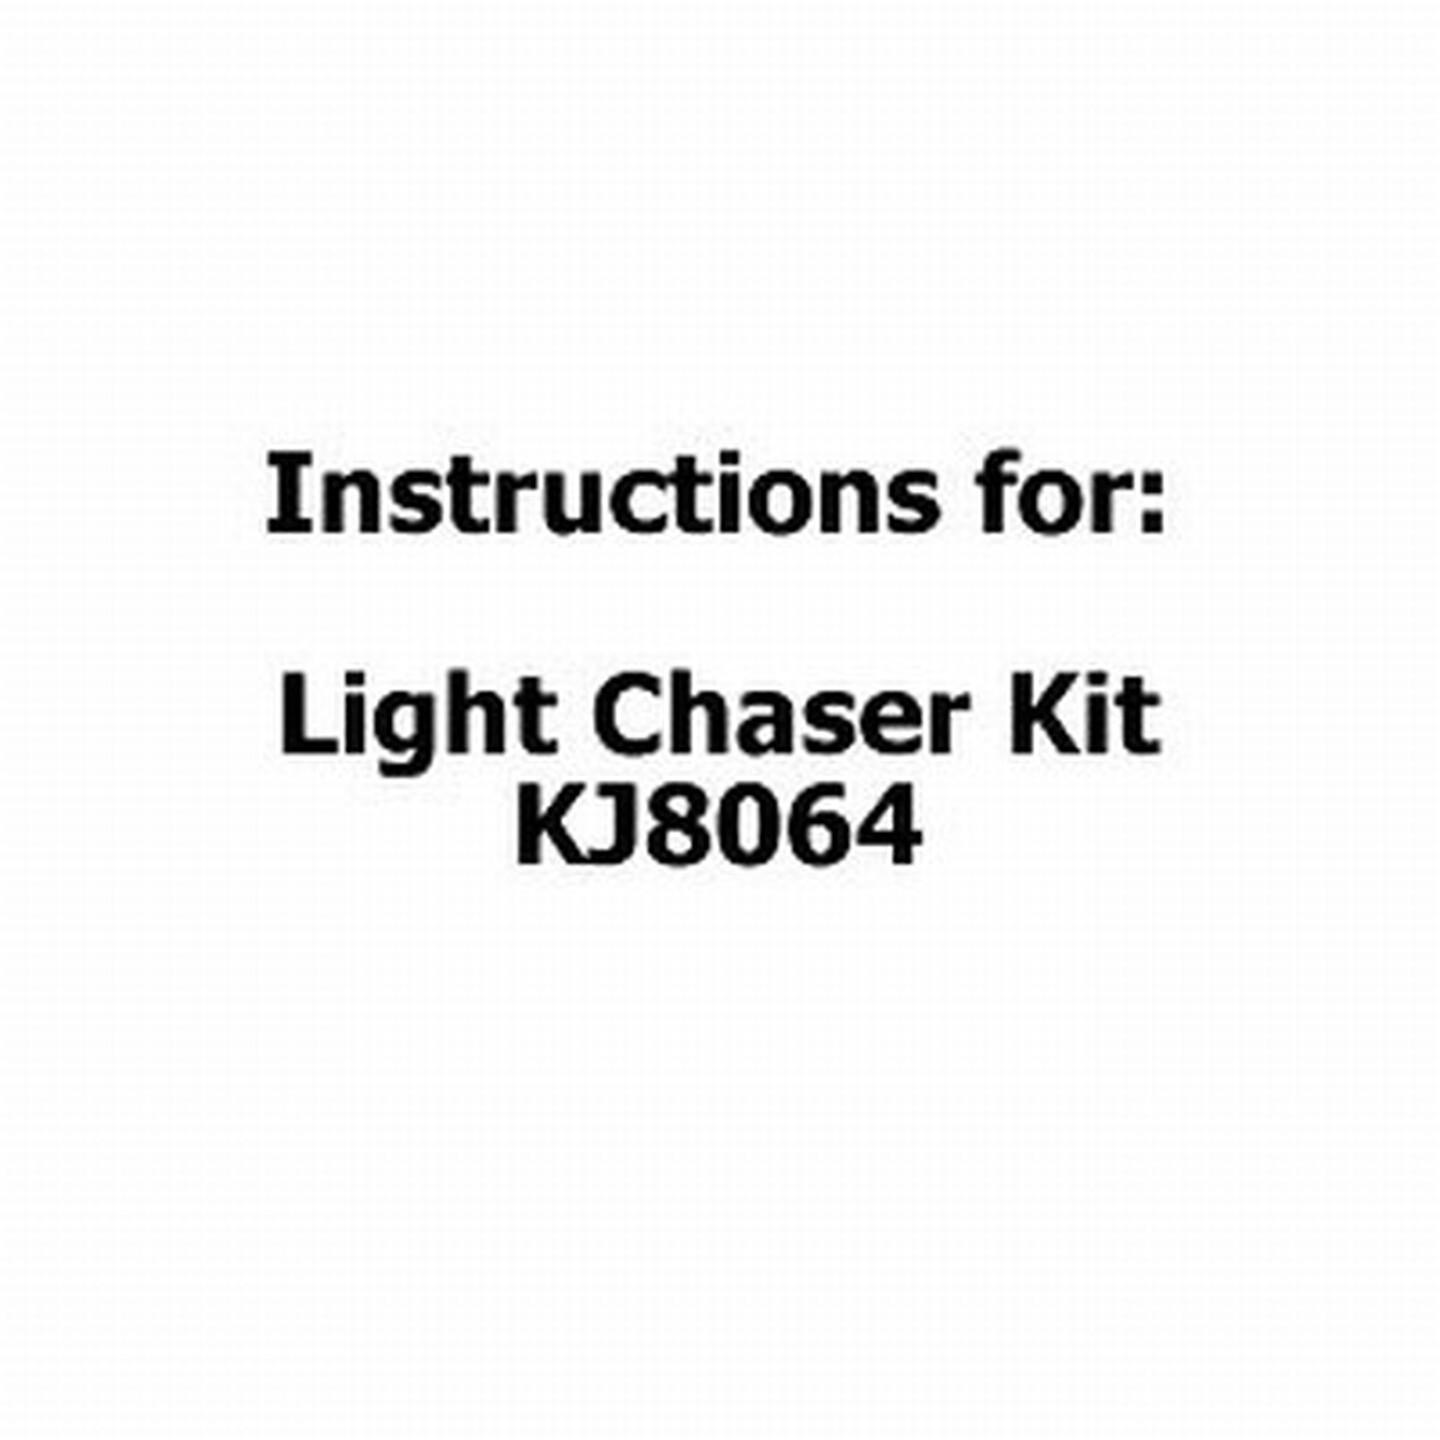 Instructions For Light Chaser Kit KJ8064